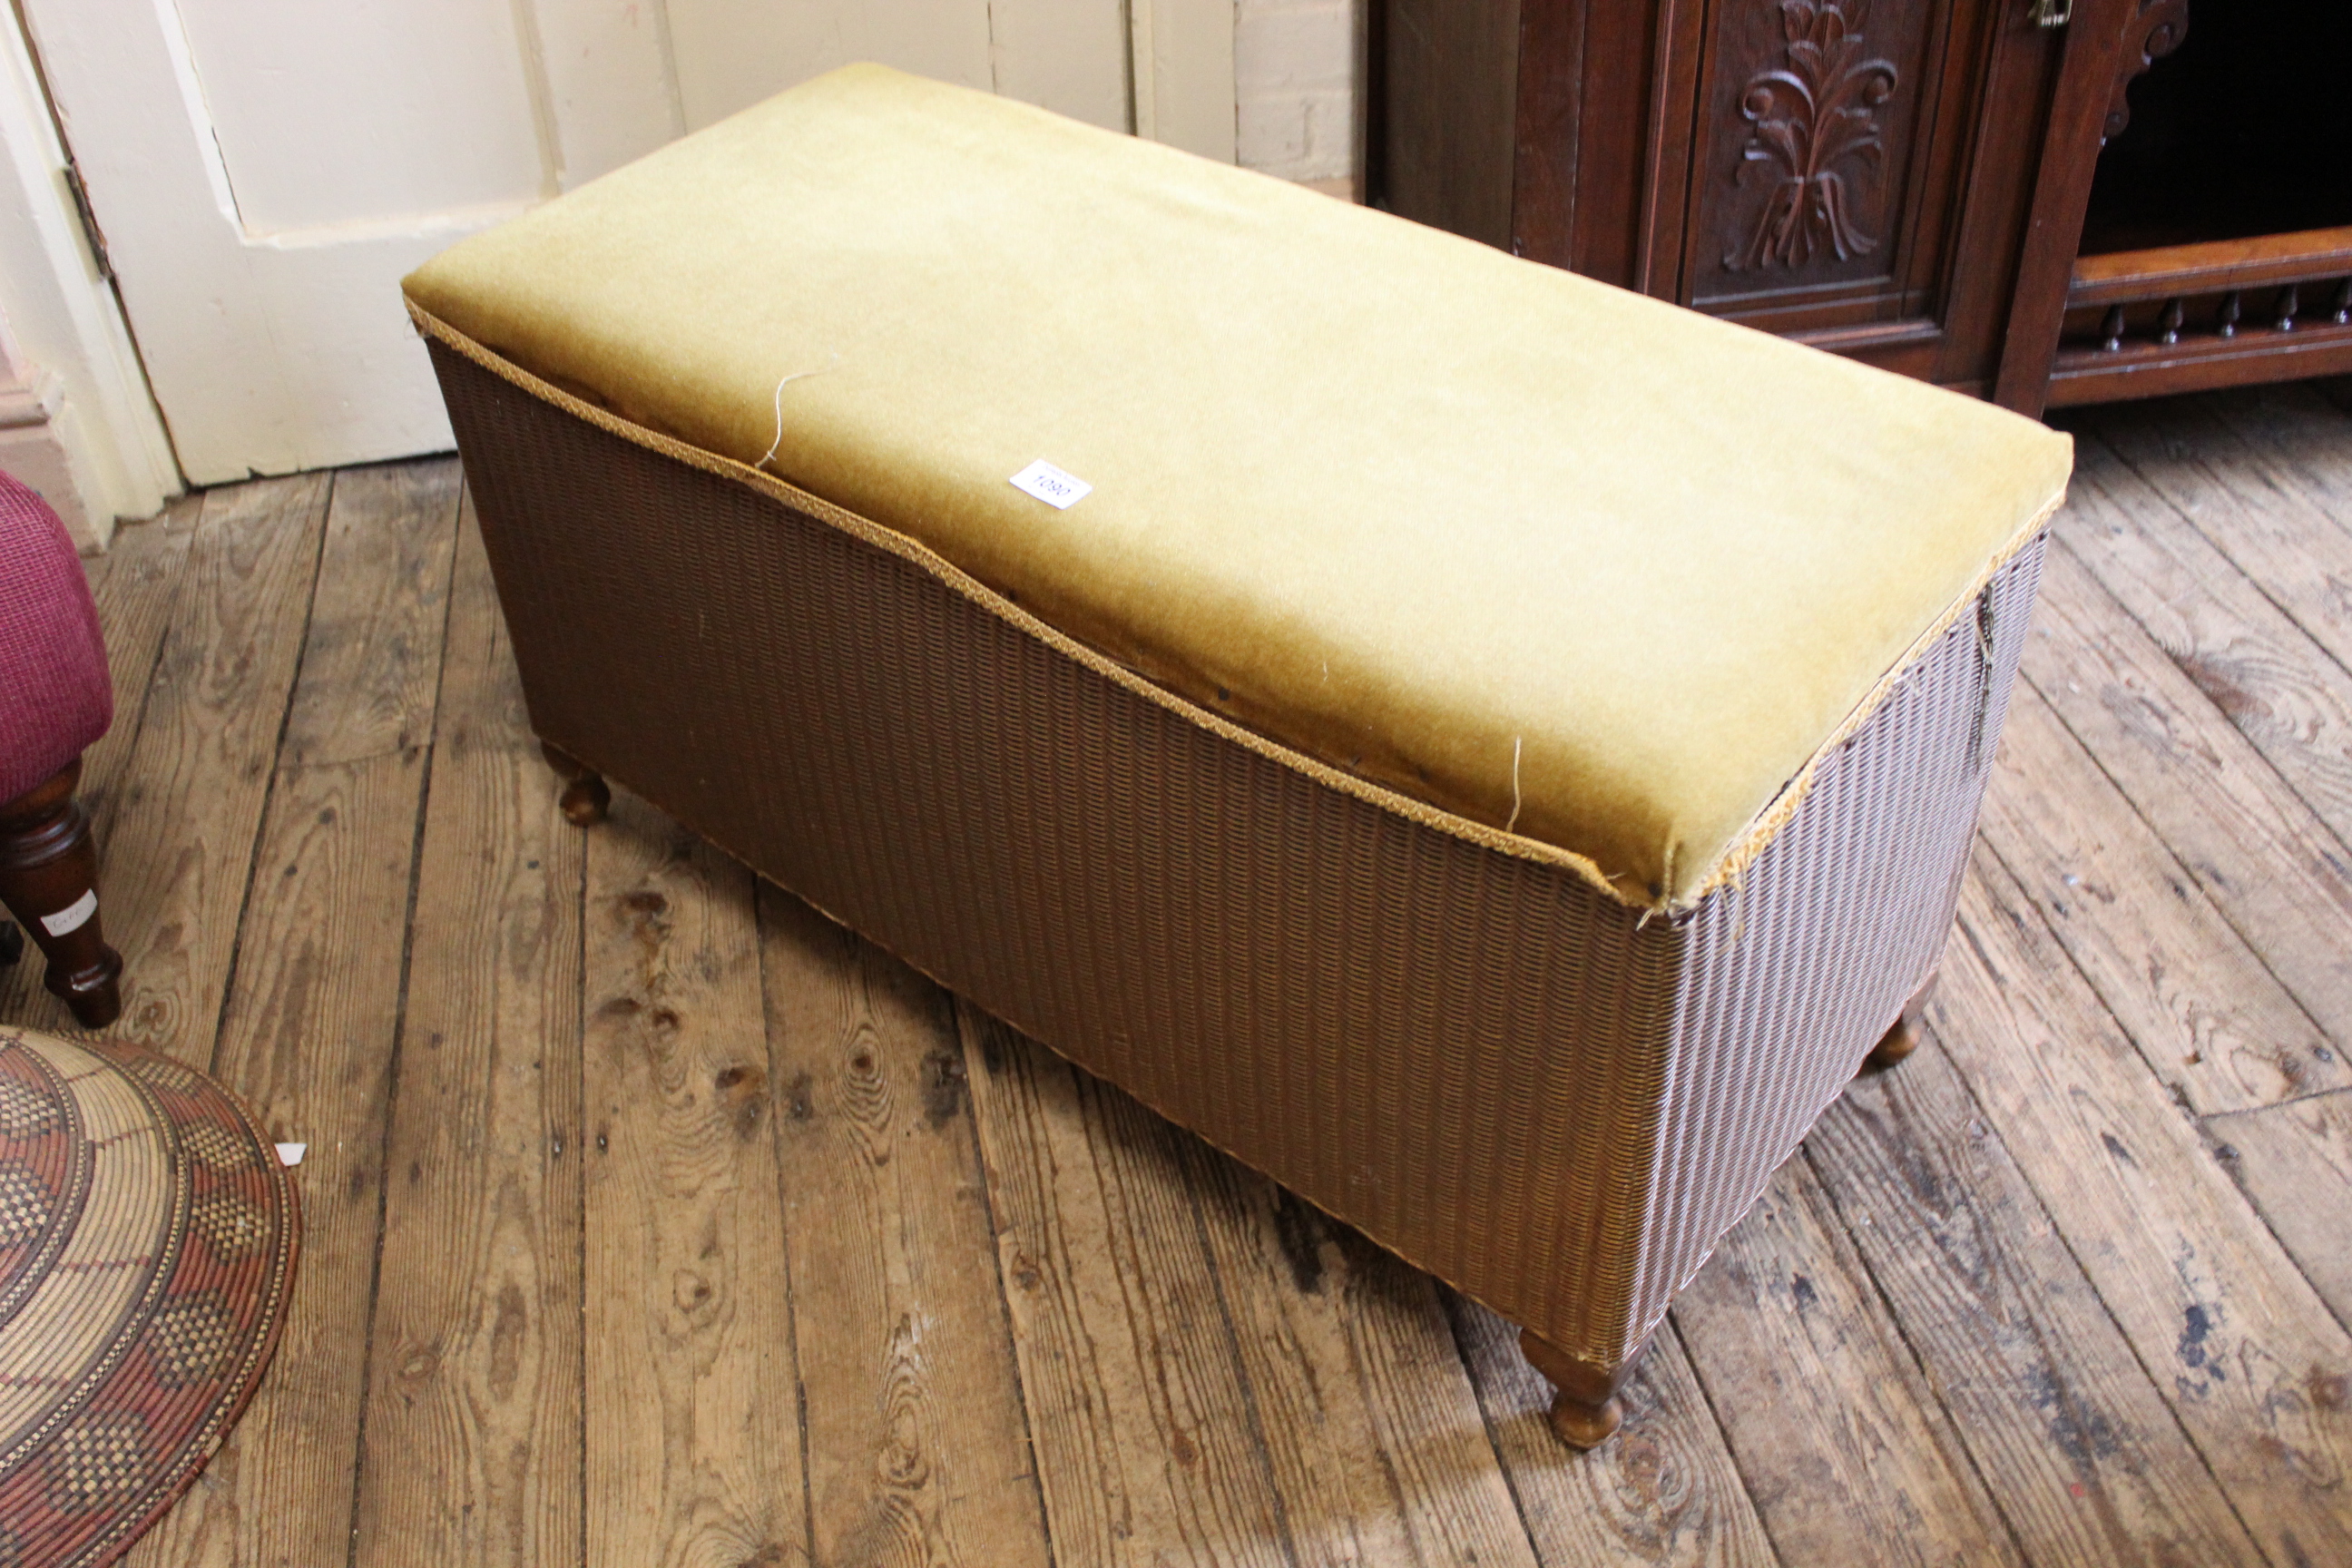 A Lloyd Loom 'Lusty' blanket box